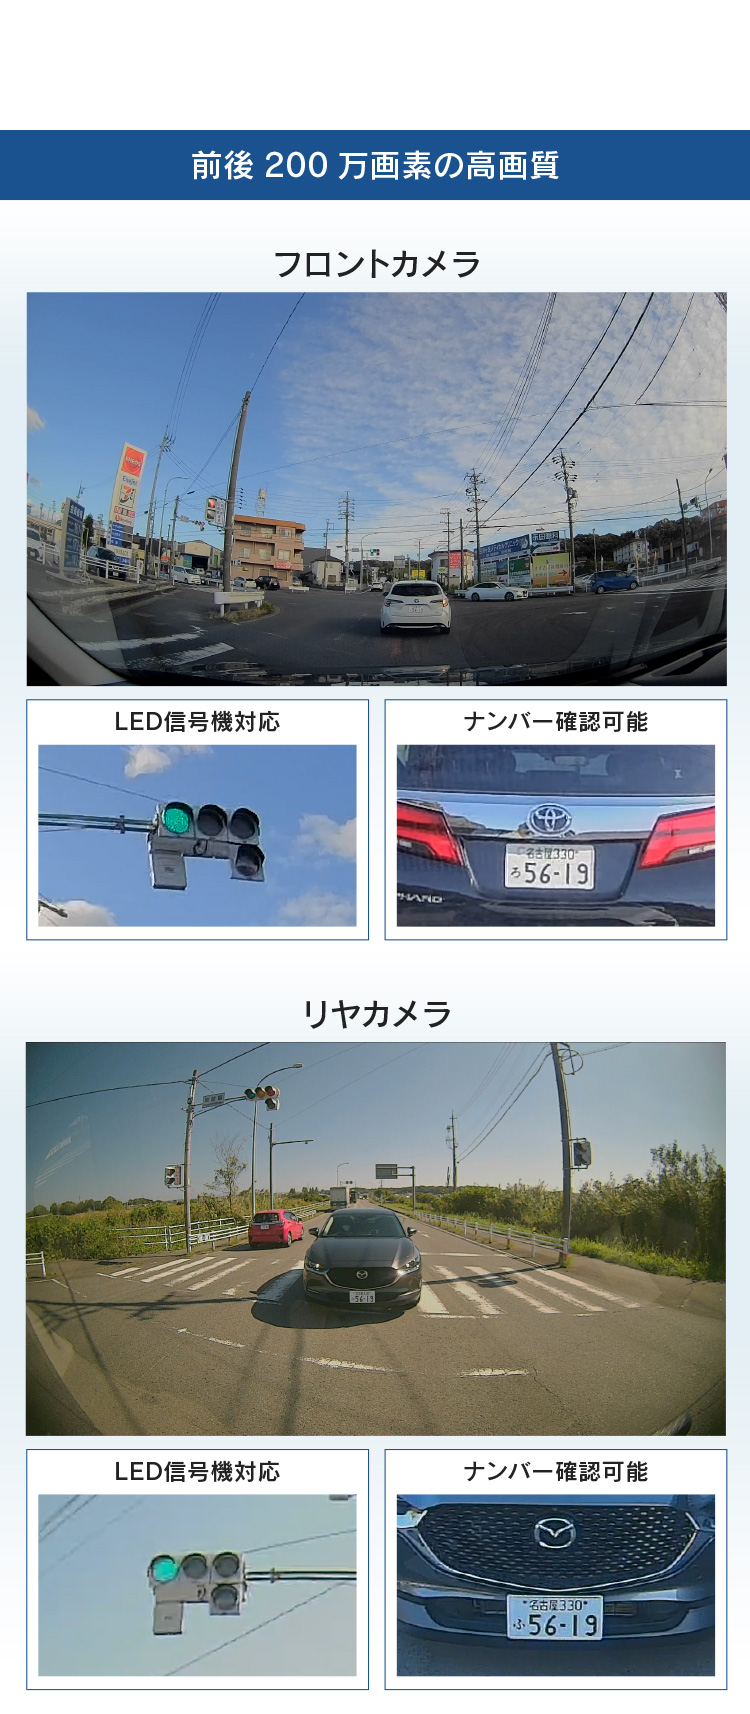 コムテック ZDR058 通信型ドライブレコーダー 前後2カメラ 撮影データクラウド自動保存 スマートフォンで確認 日本製 3年保証 駐車監視対応